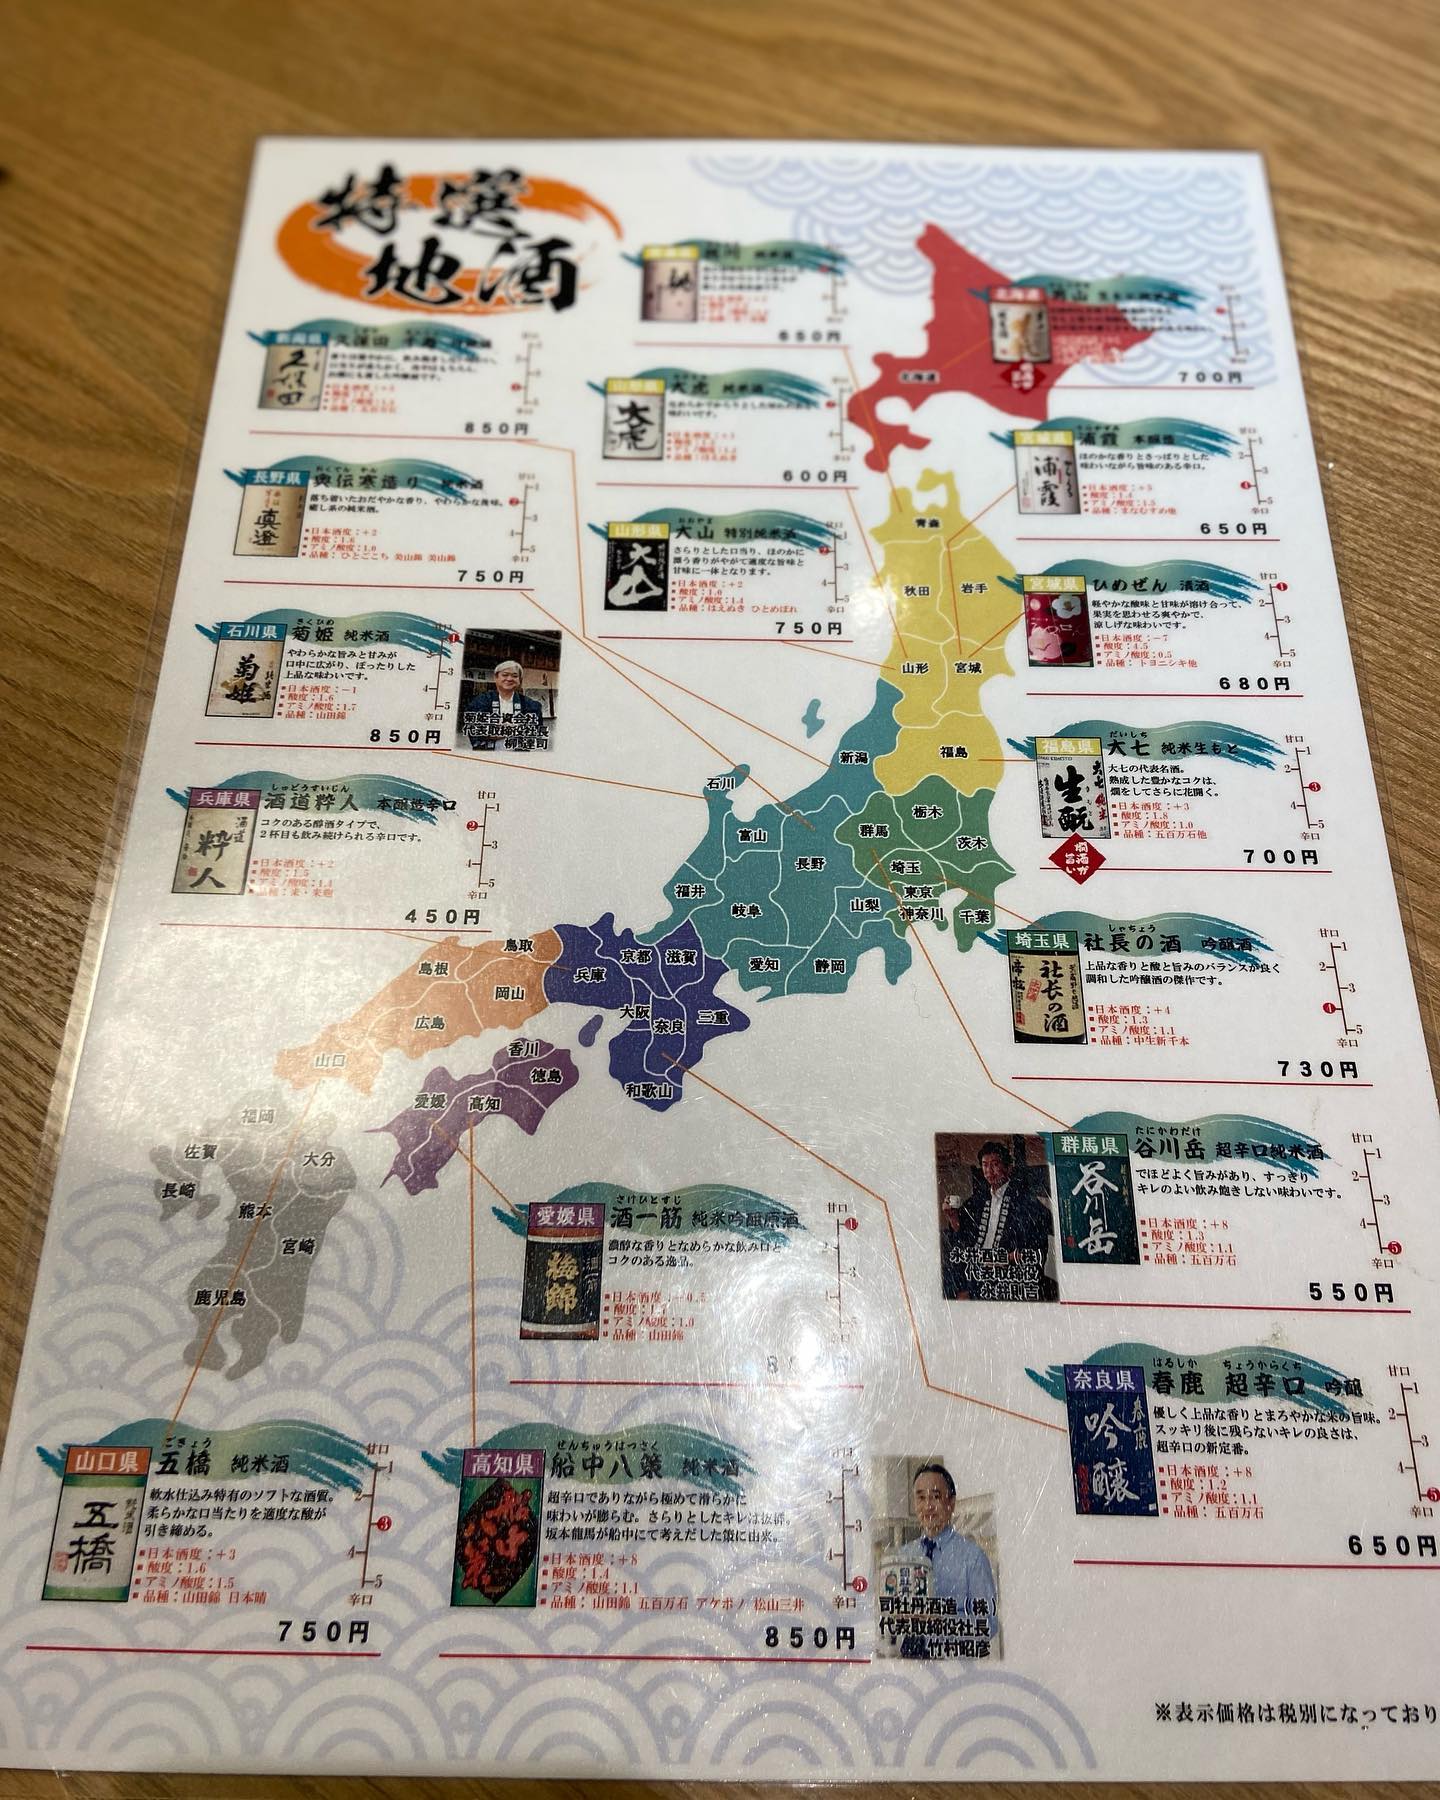 いろいろな日本酒も、取り揃えております。

まだまだ、トリュフご飯発売中です。